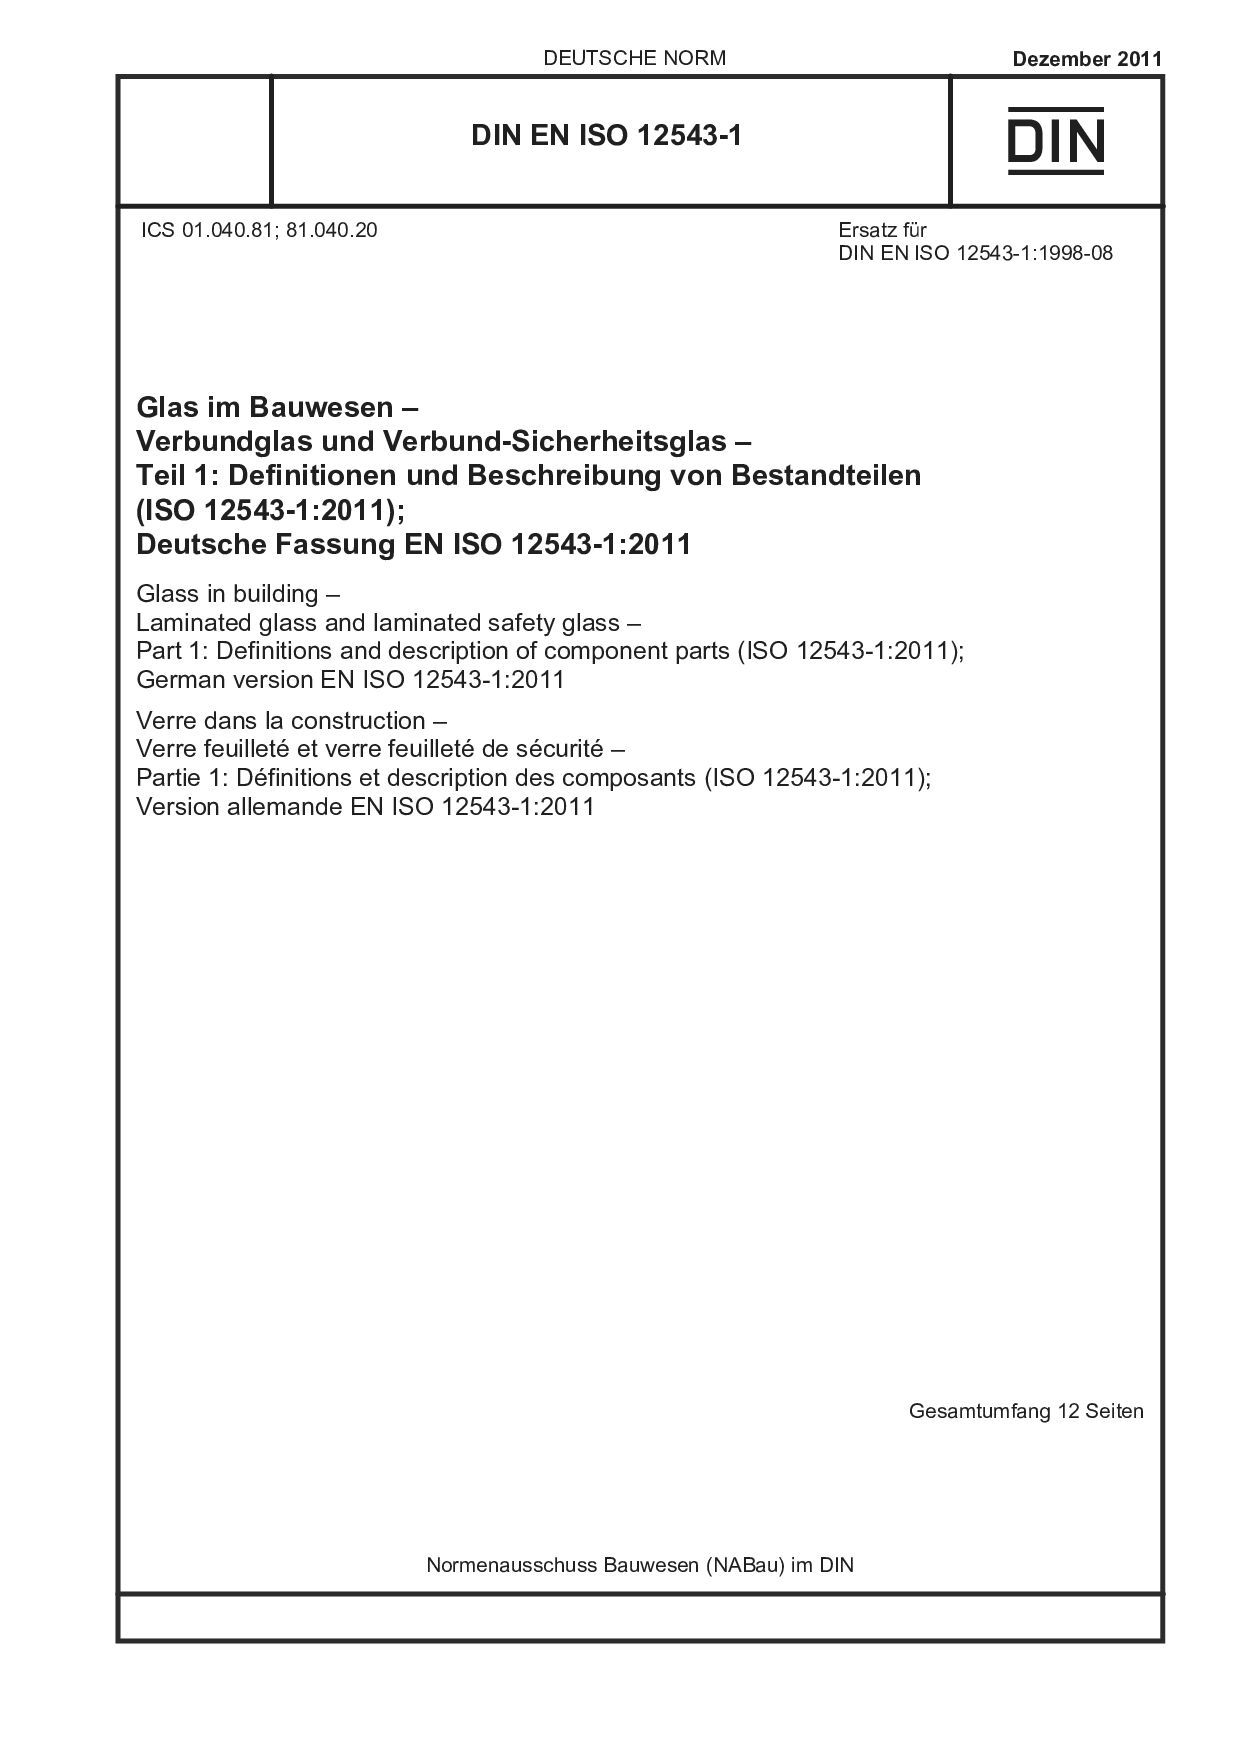 DIN EN ISO 12543-1:2011